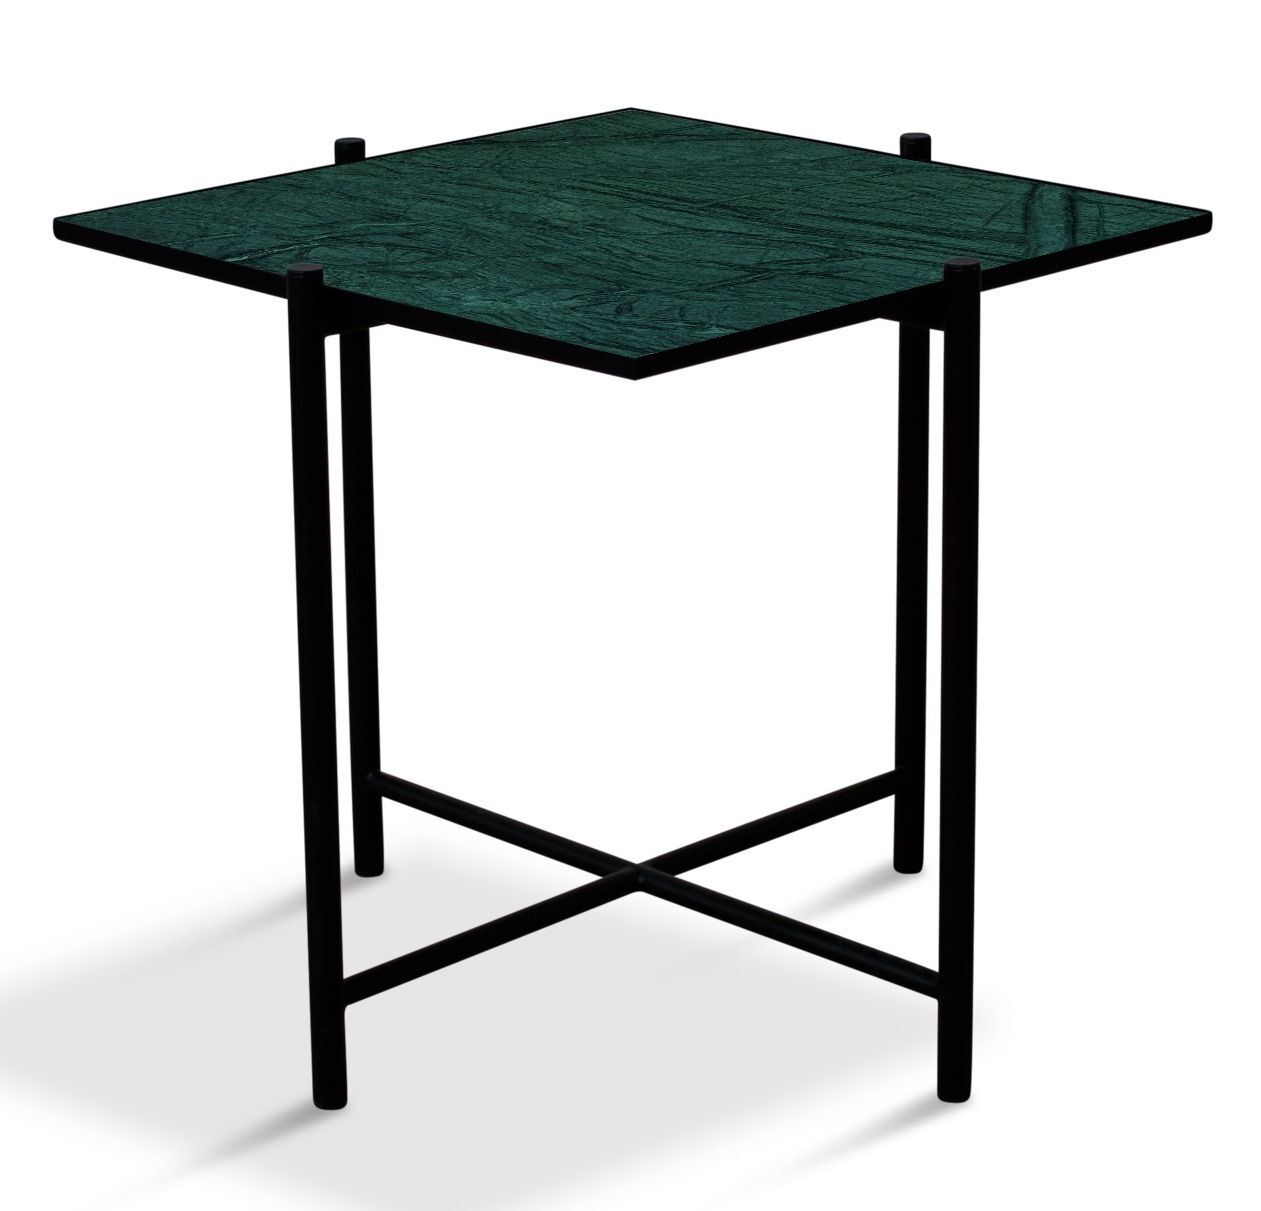 HANDVÄRK Original Sidebord, Grønn marmor   Unoliving